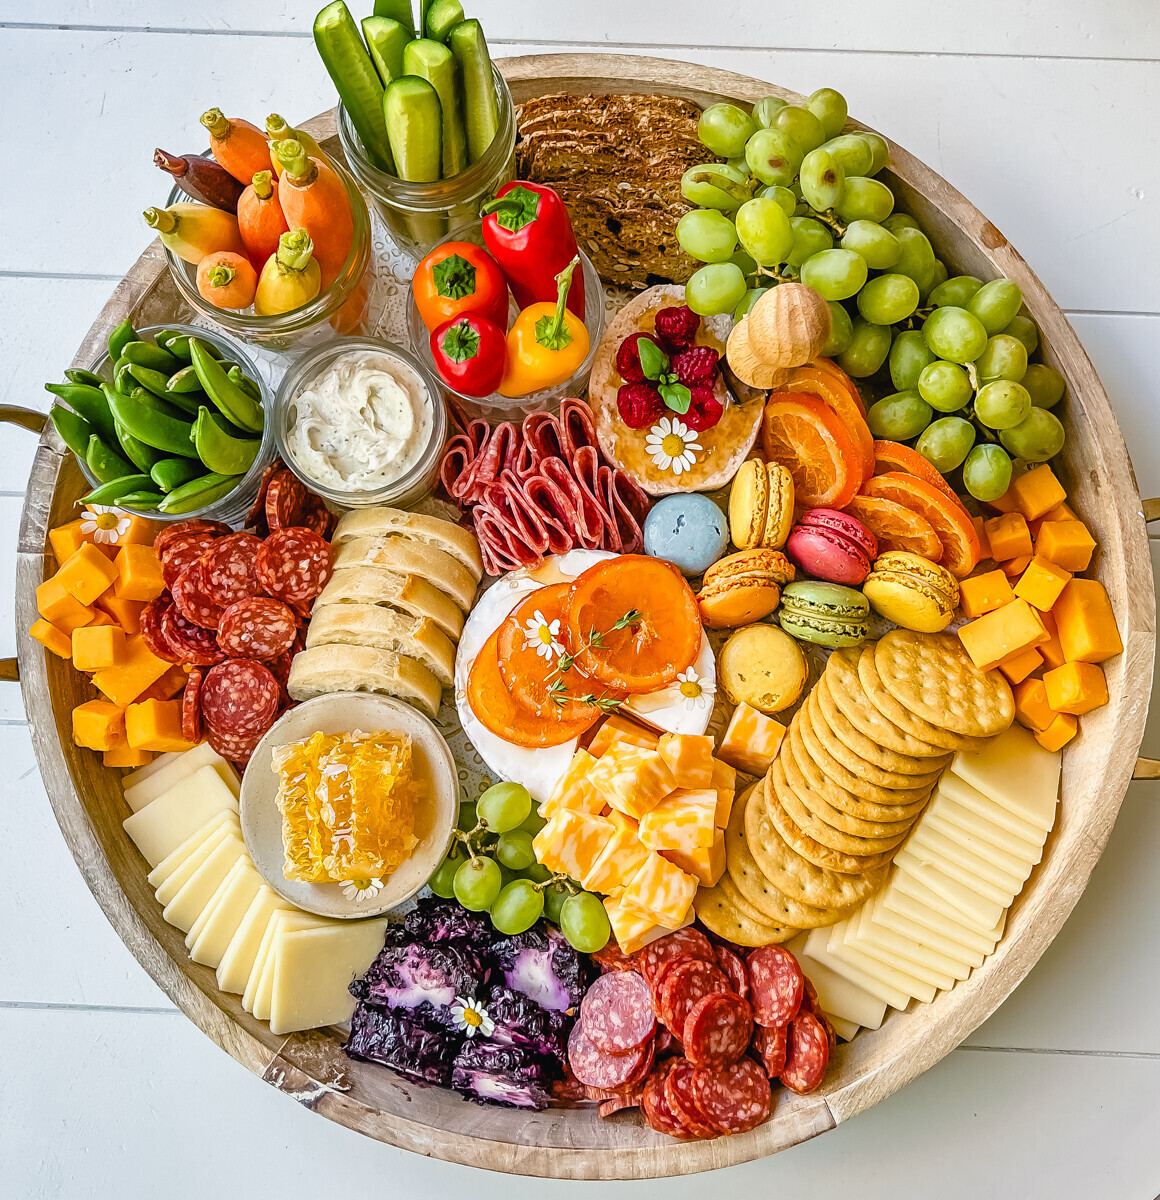 تخته غذای گرد با گوشت، پنیر، کراکر و سایر تنقلات رنگارنگ